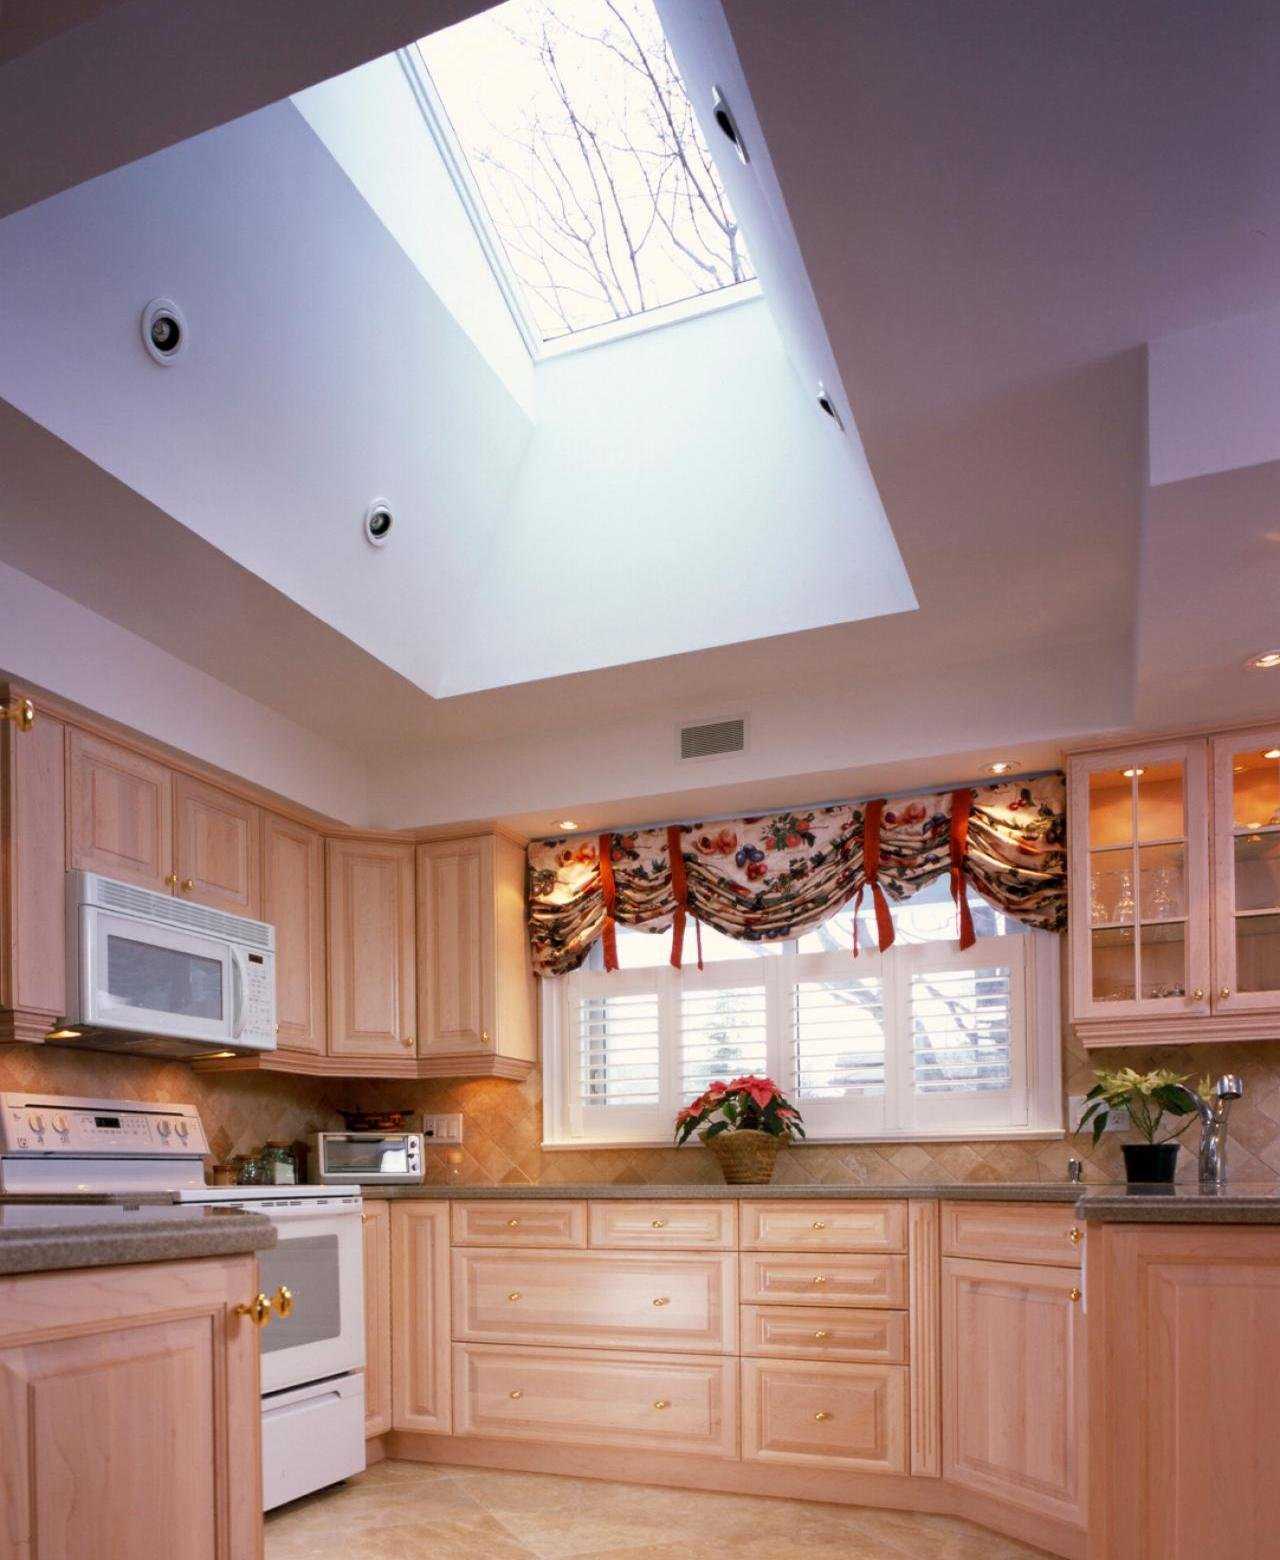 Натяжной потолок на кухне: дизайн, и фото лучших вариантов, виды потолков, их плюсы и минусы установки на кухне